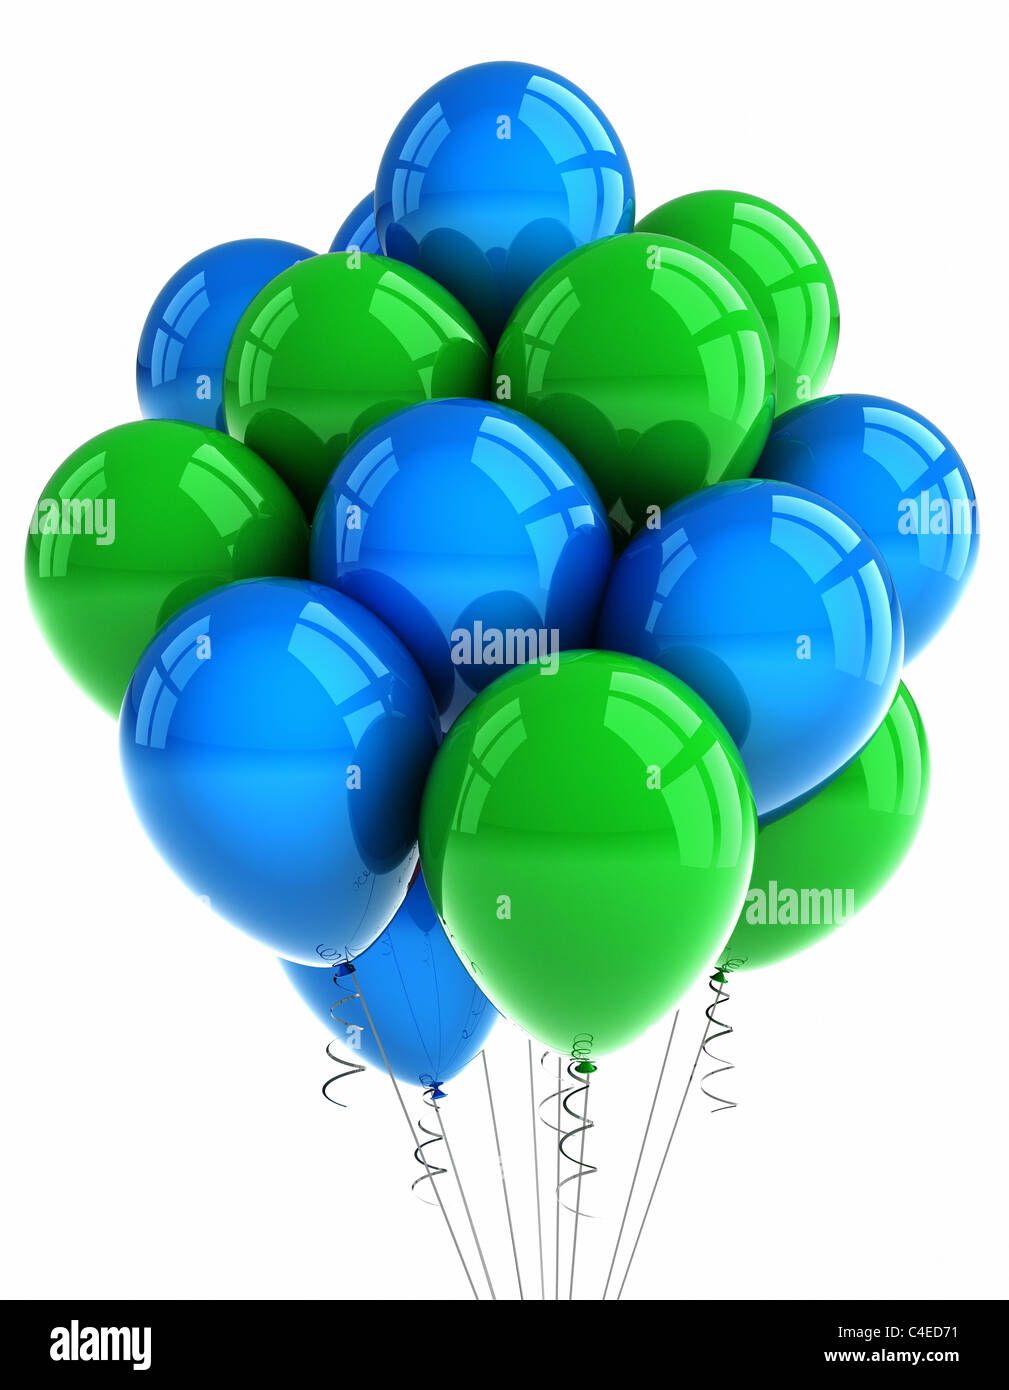 Globos verdes y azules fotografías e imágenes de alta resolución - Alamy